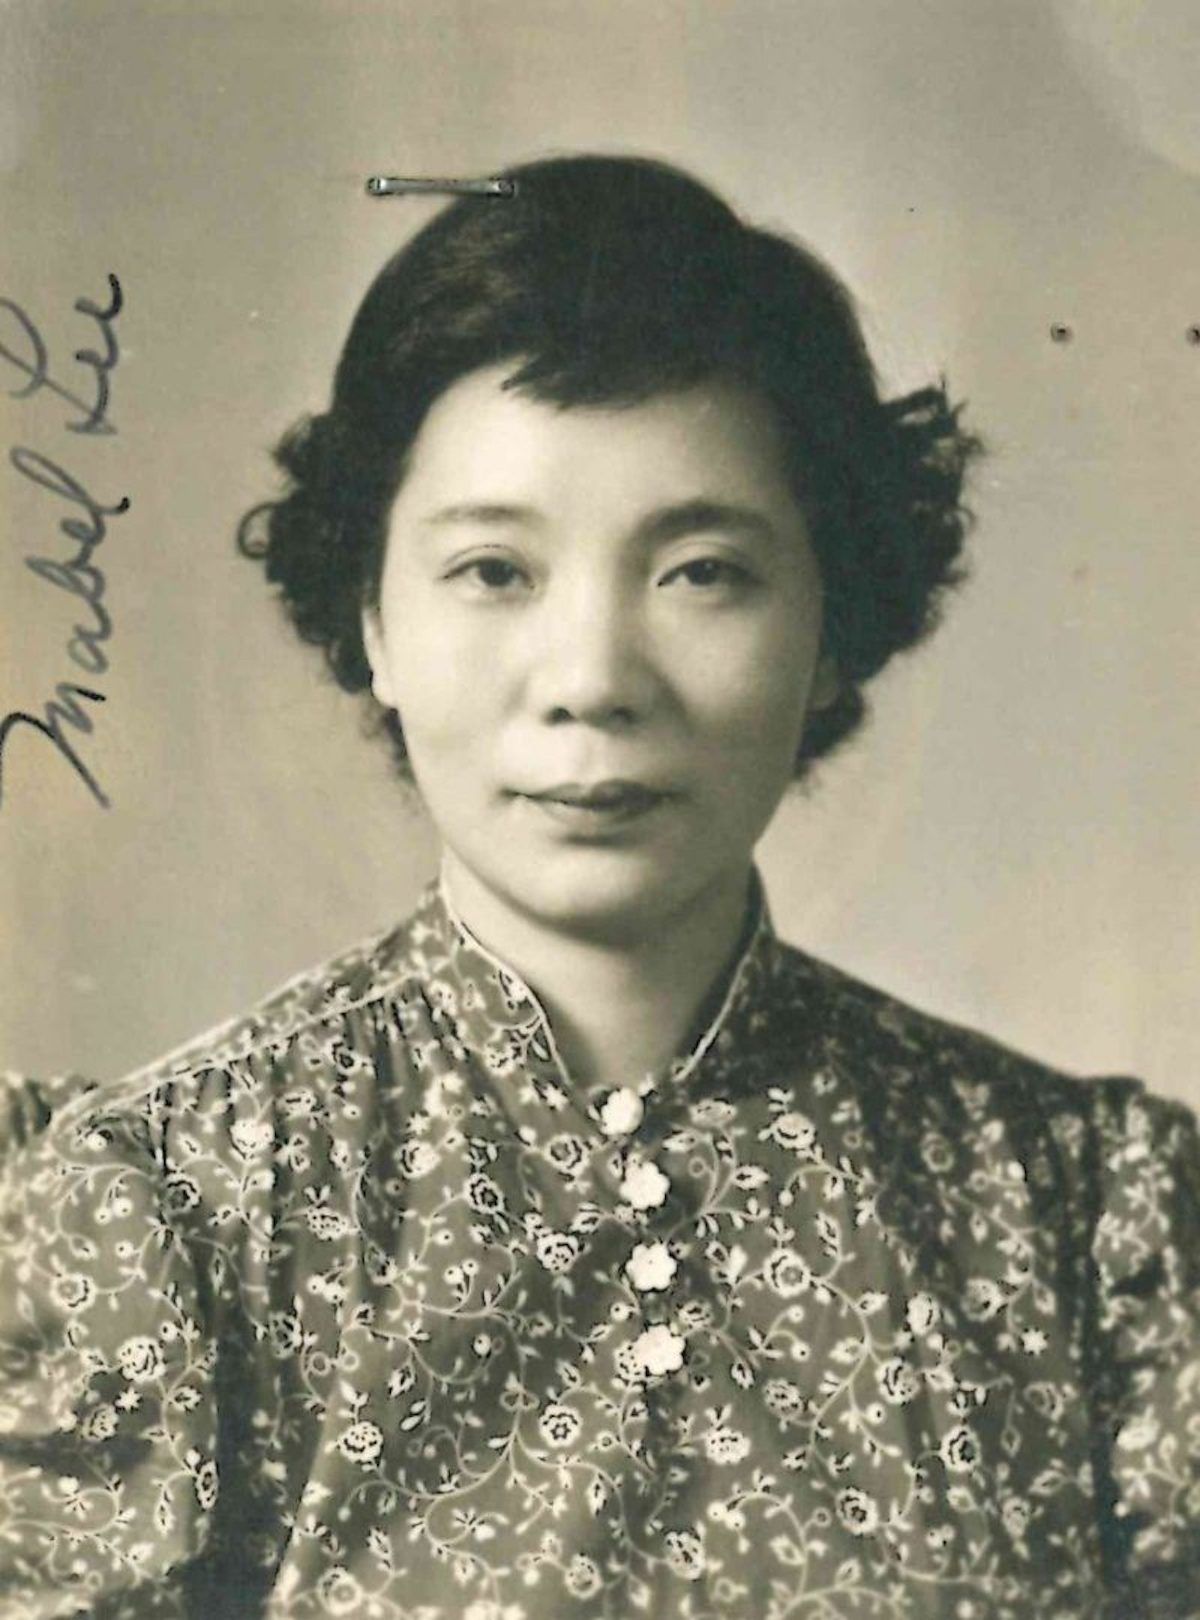 Mabel Ping-hua Lee